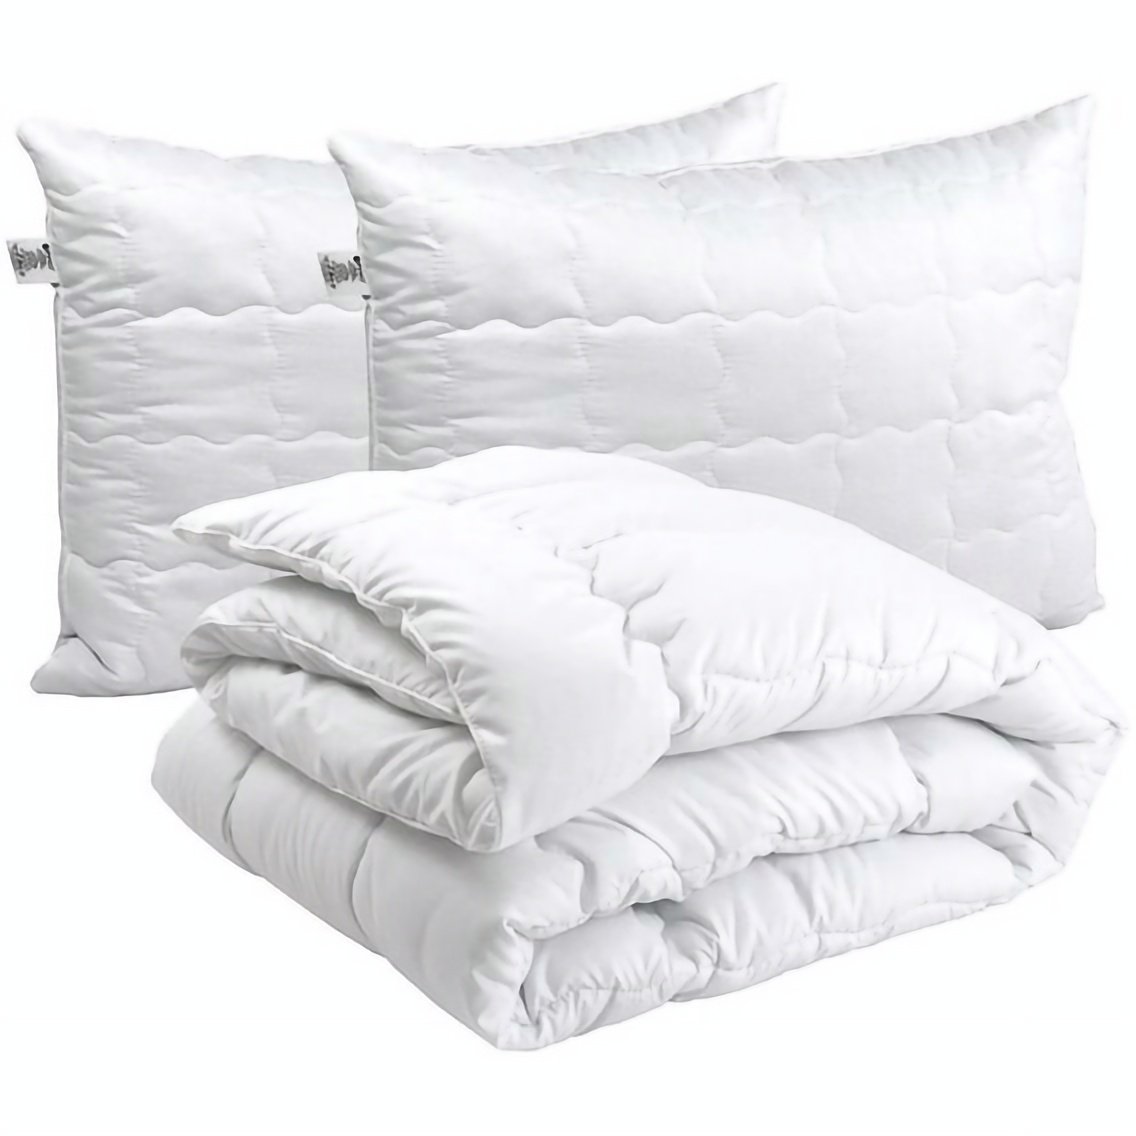 Набор силиконовый Руно Warm Silver: одеяло 220х200 см + подушка 70х50 см, 2 шт. (925.52_Warm Silver) - фото 1